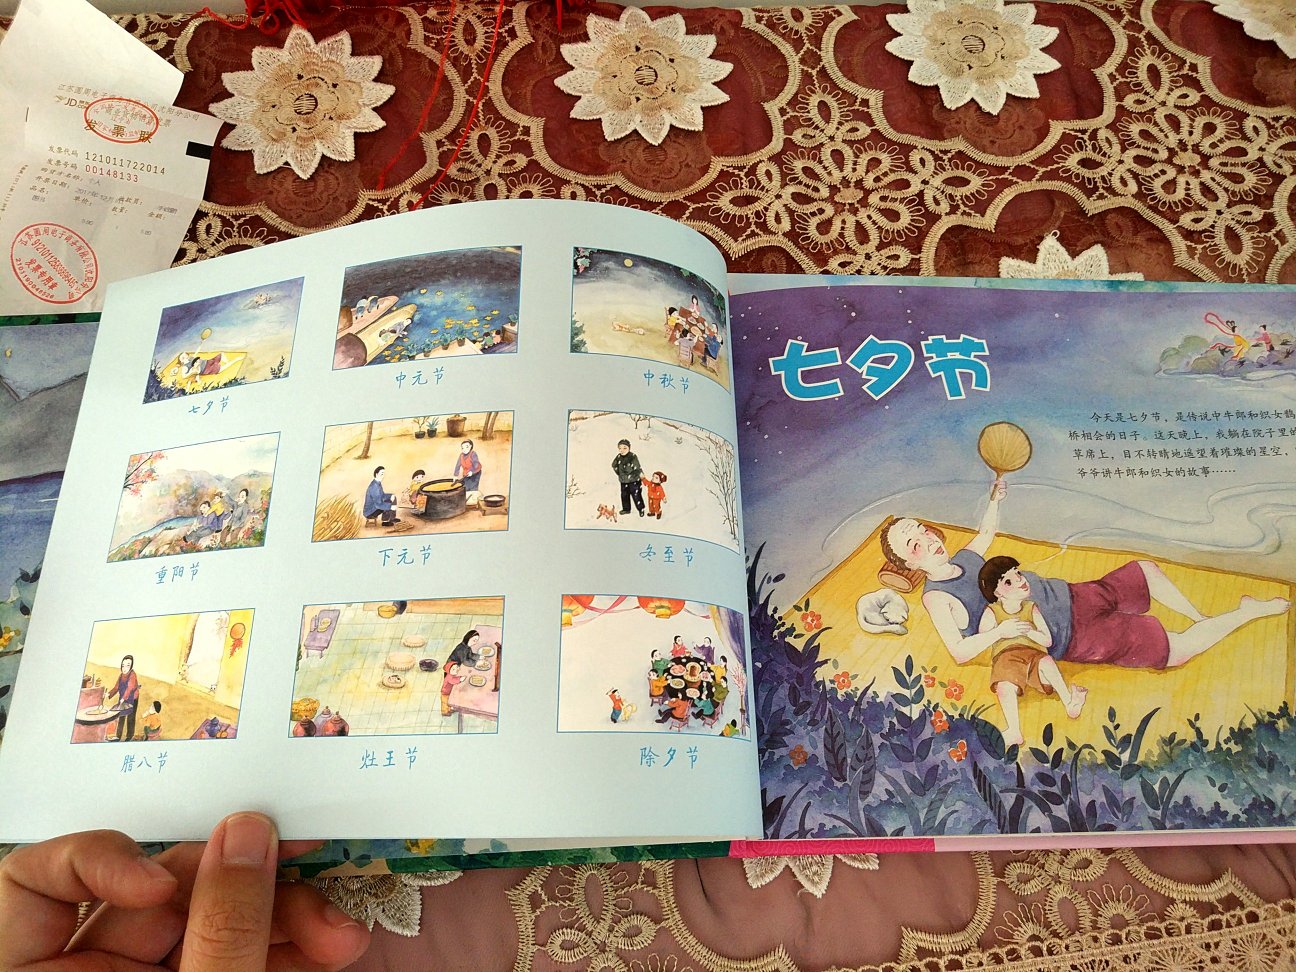 这是一套很好的书。对小朋友来说，介绍了很多传统节日习俗，让孩子知道了更多民俗文化。